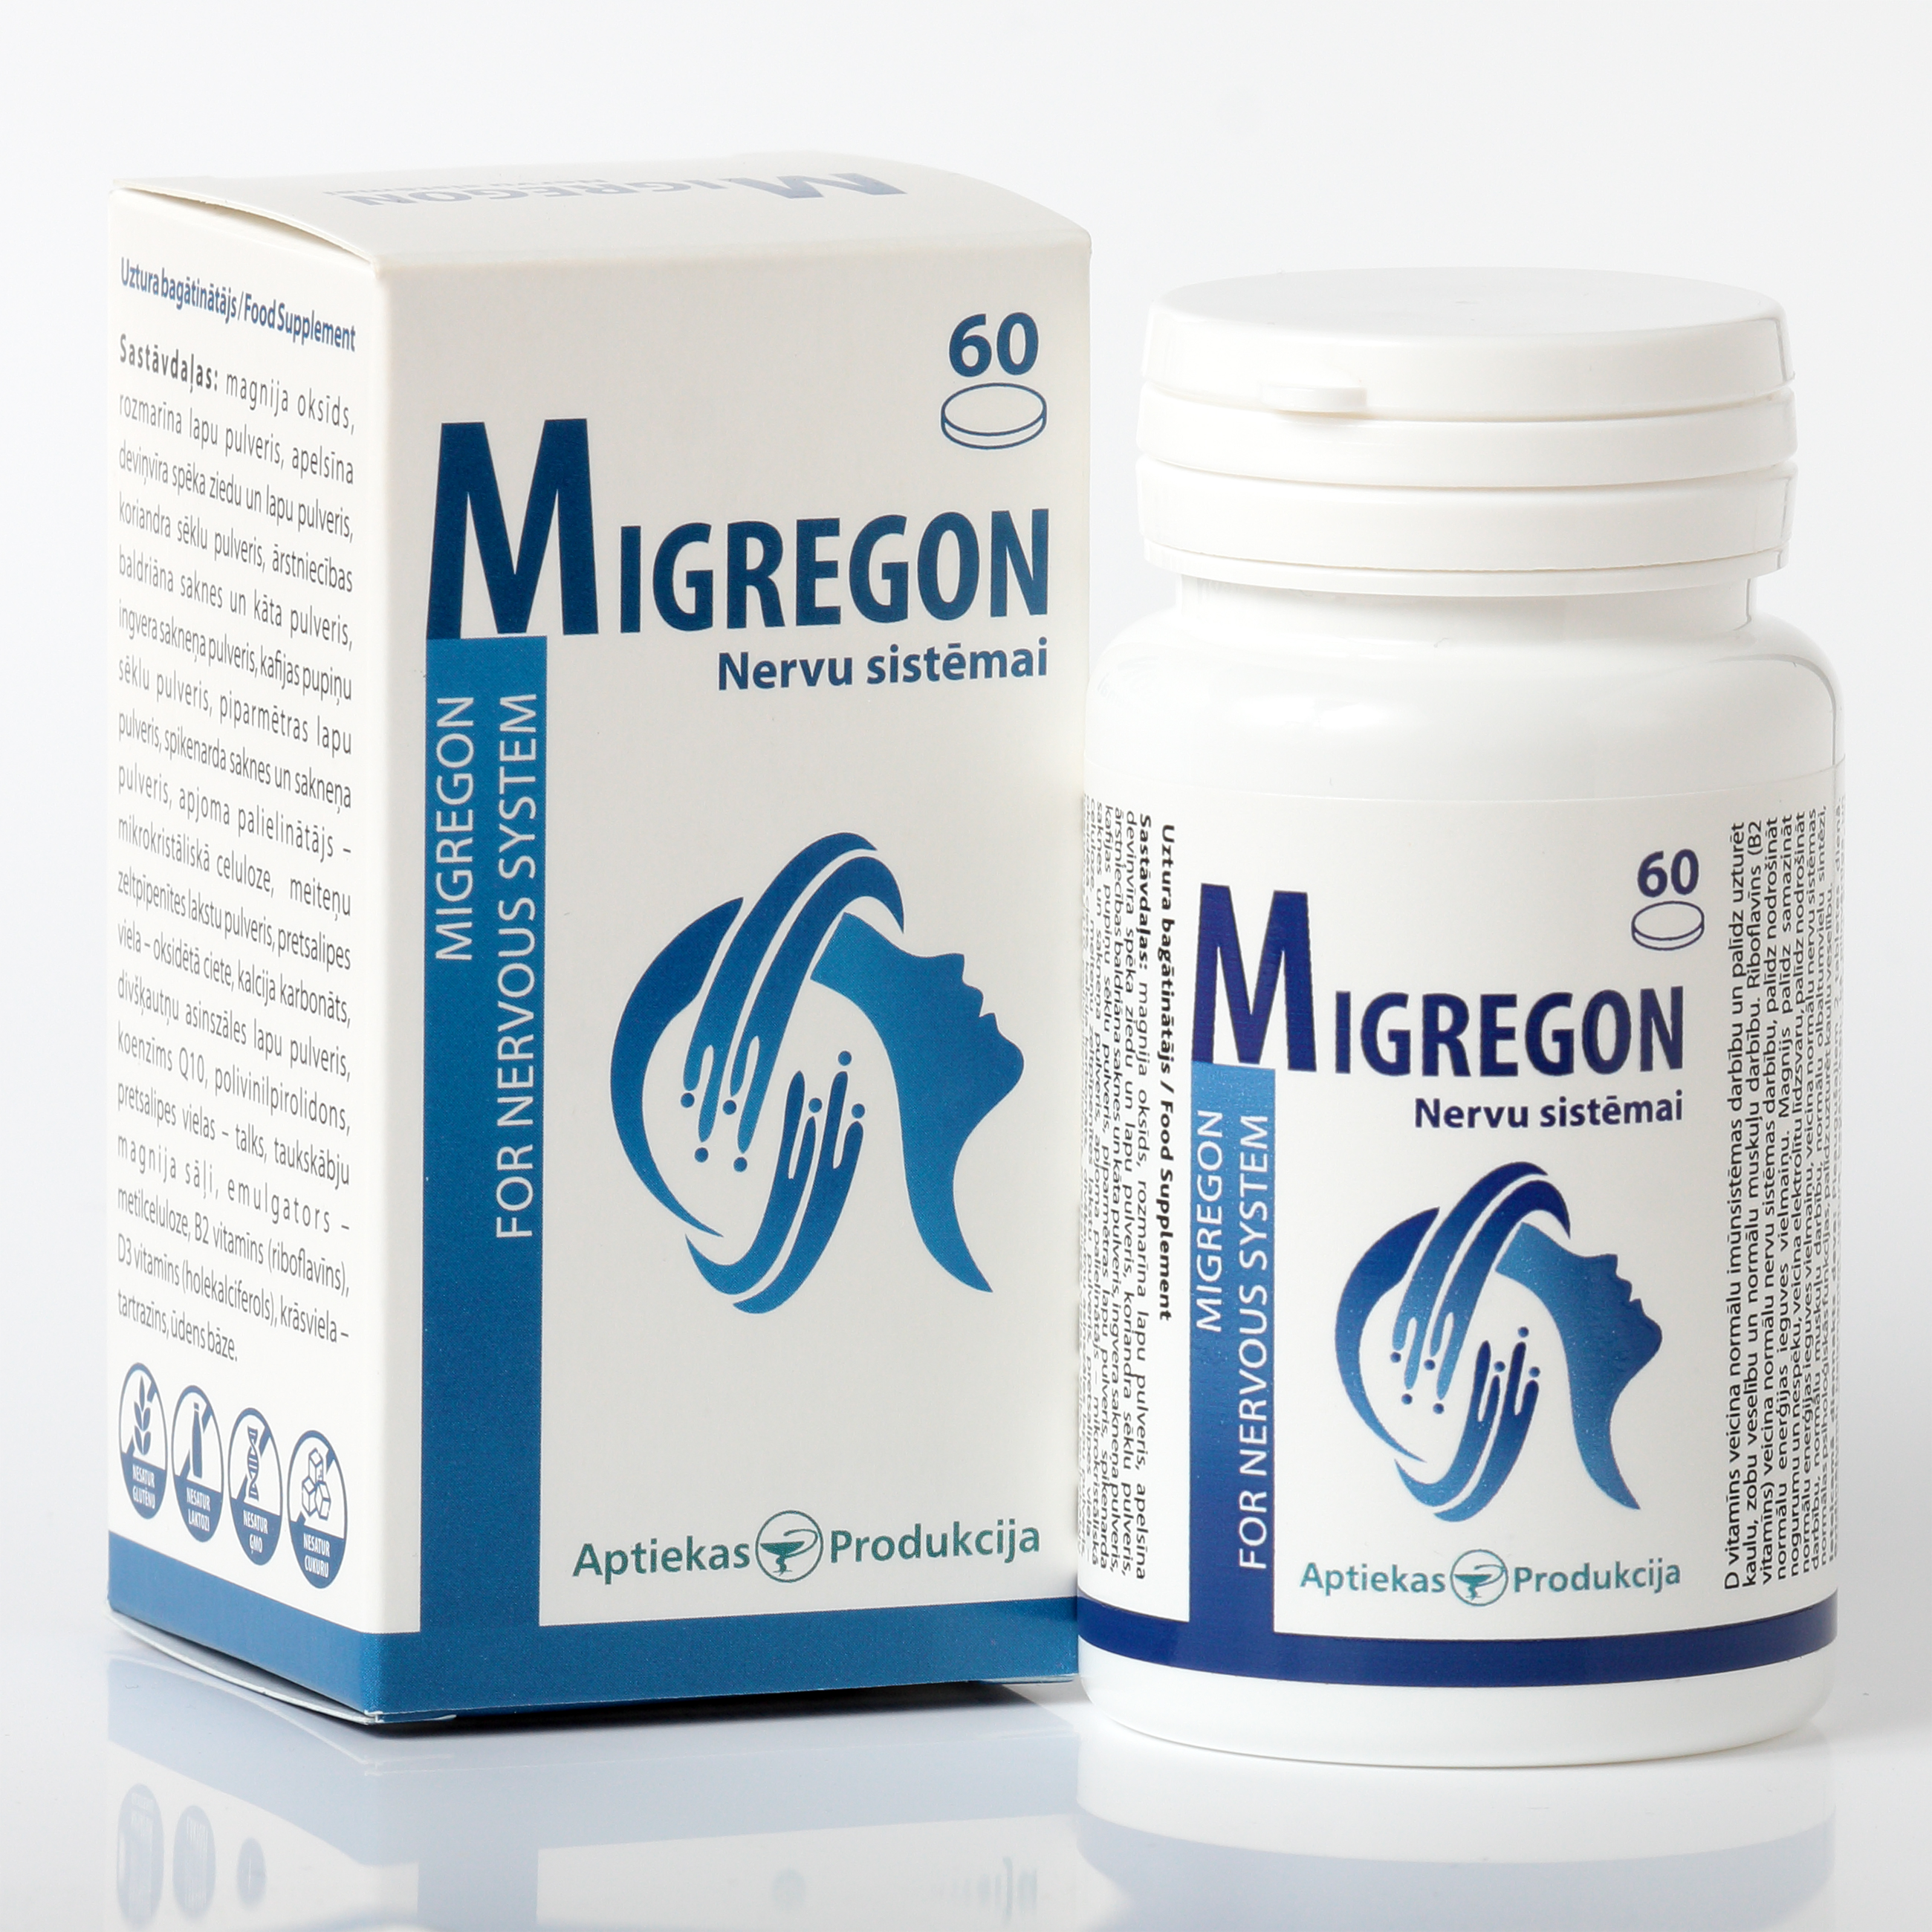 Migregon for Nerve System